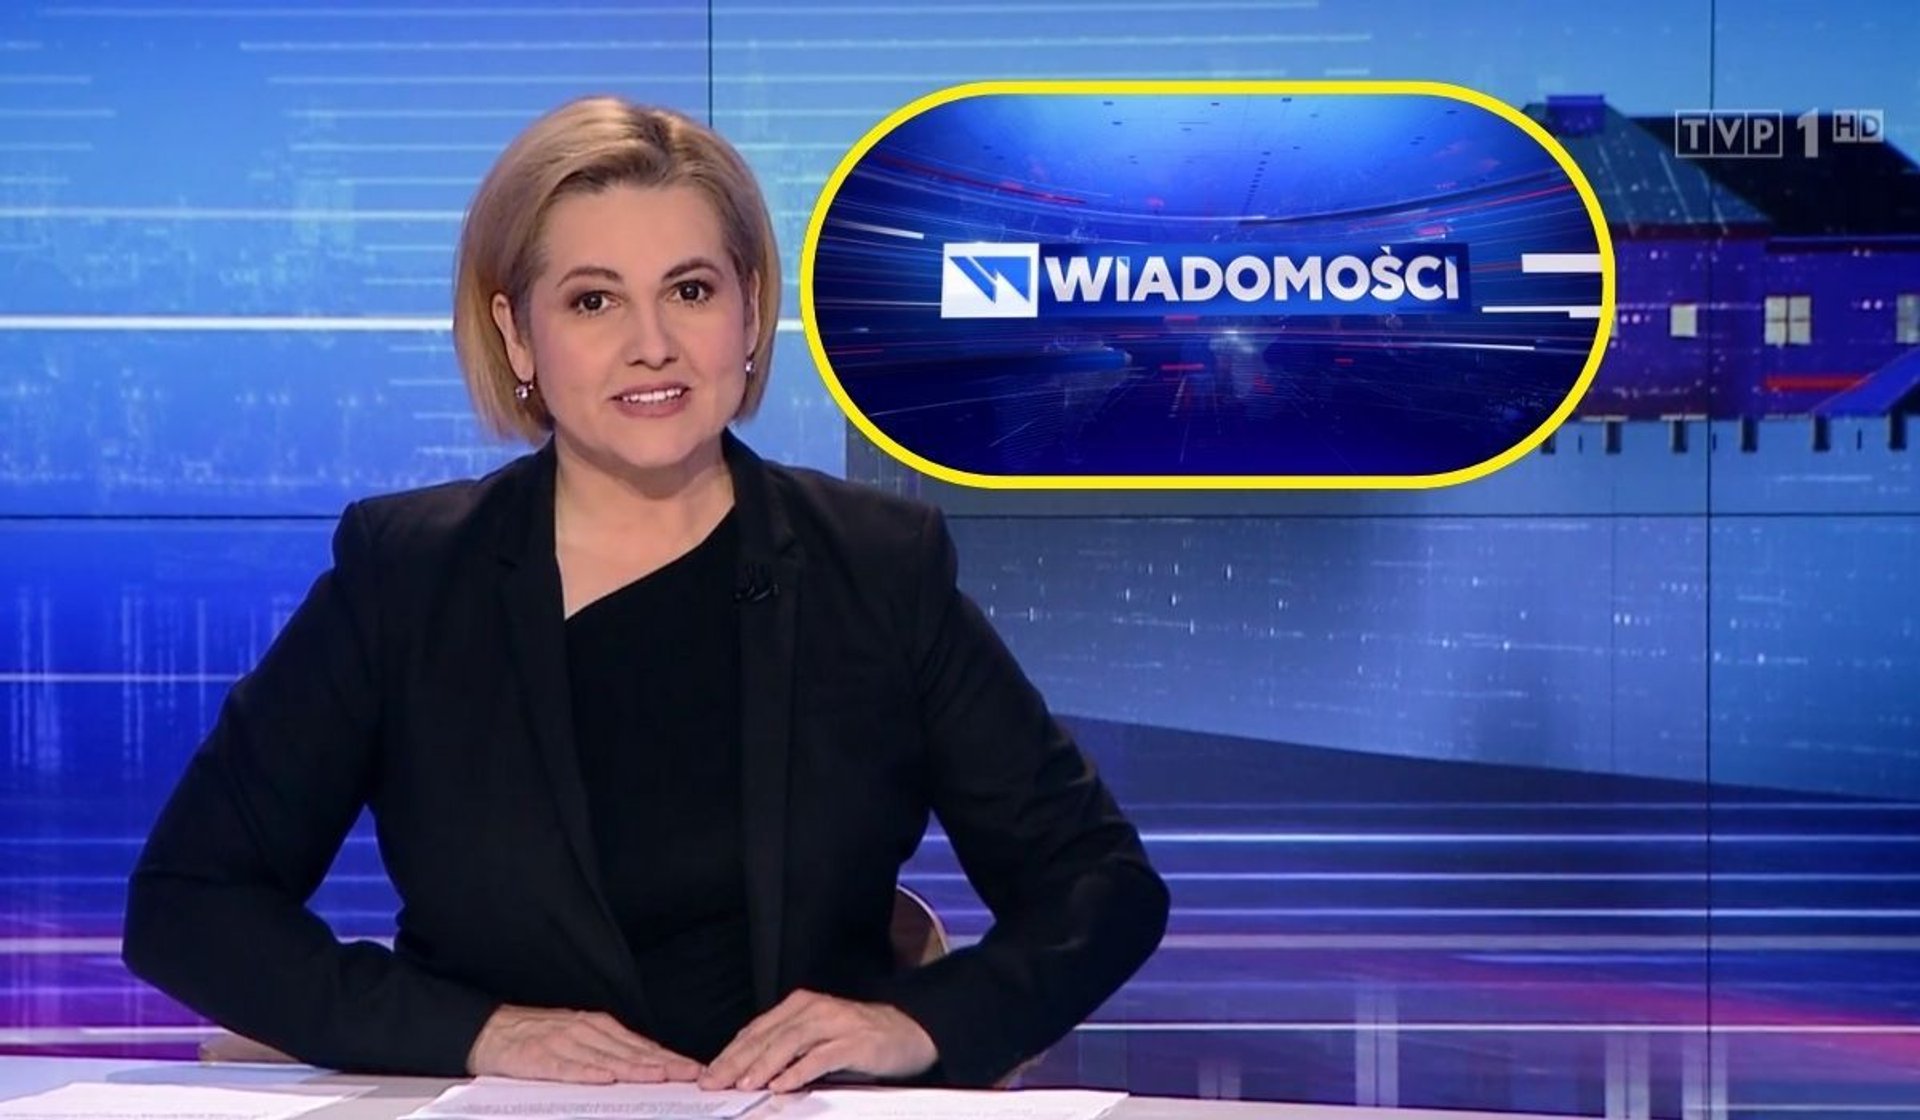 W programie „Wiadomości” przekazano pilne wieści o zmianach jakie obiegły Polskę, for. kadr z programu „Wiadomości”